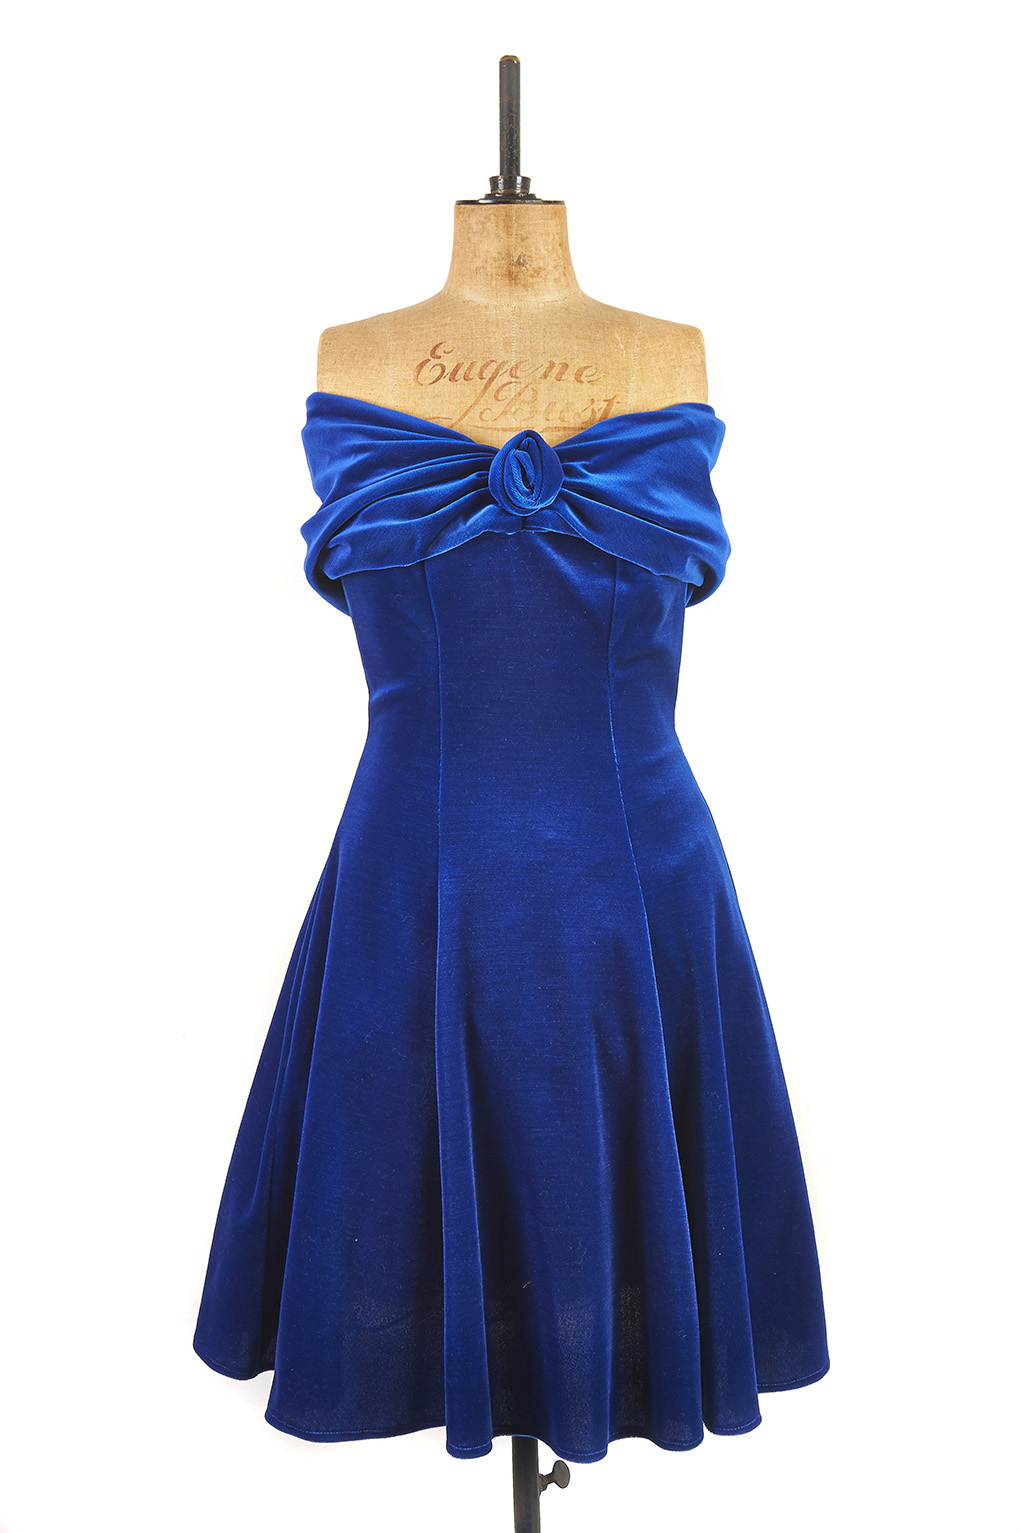 Blue Velvet Dress by Hamells c.1980